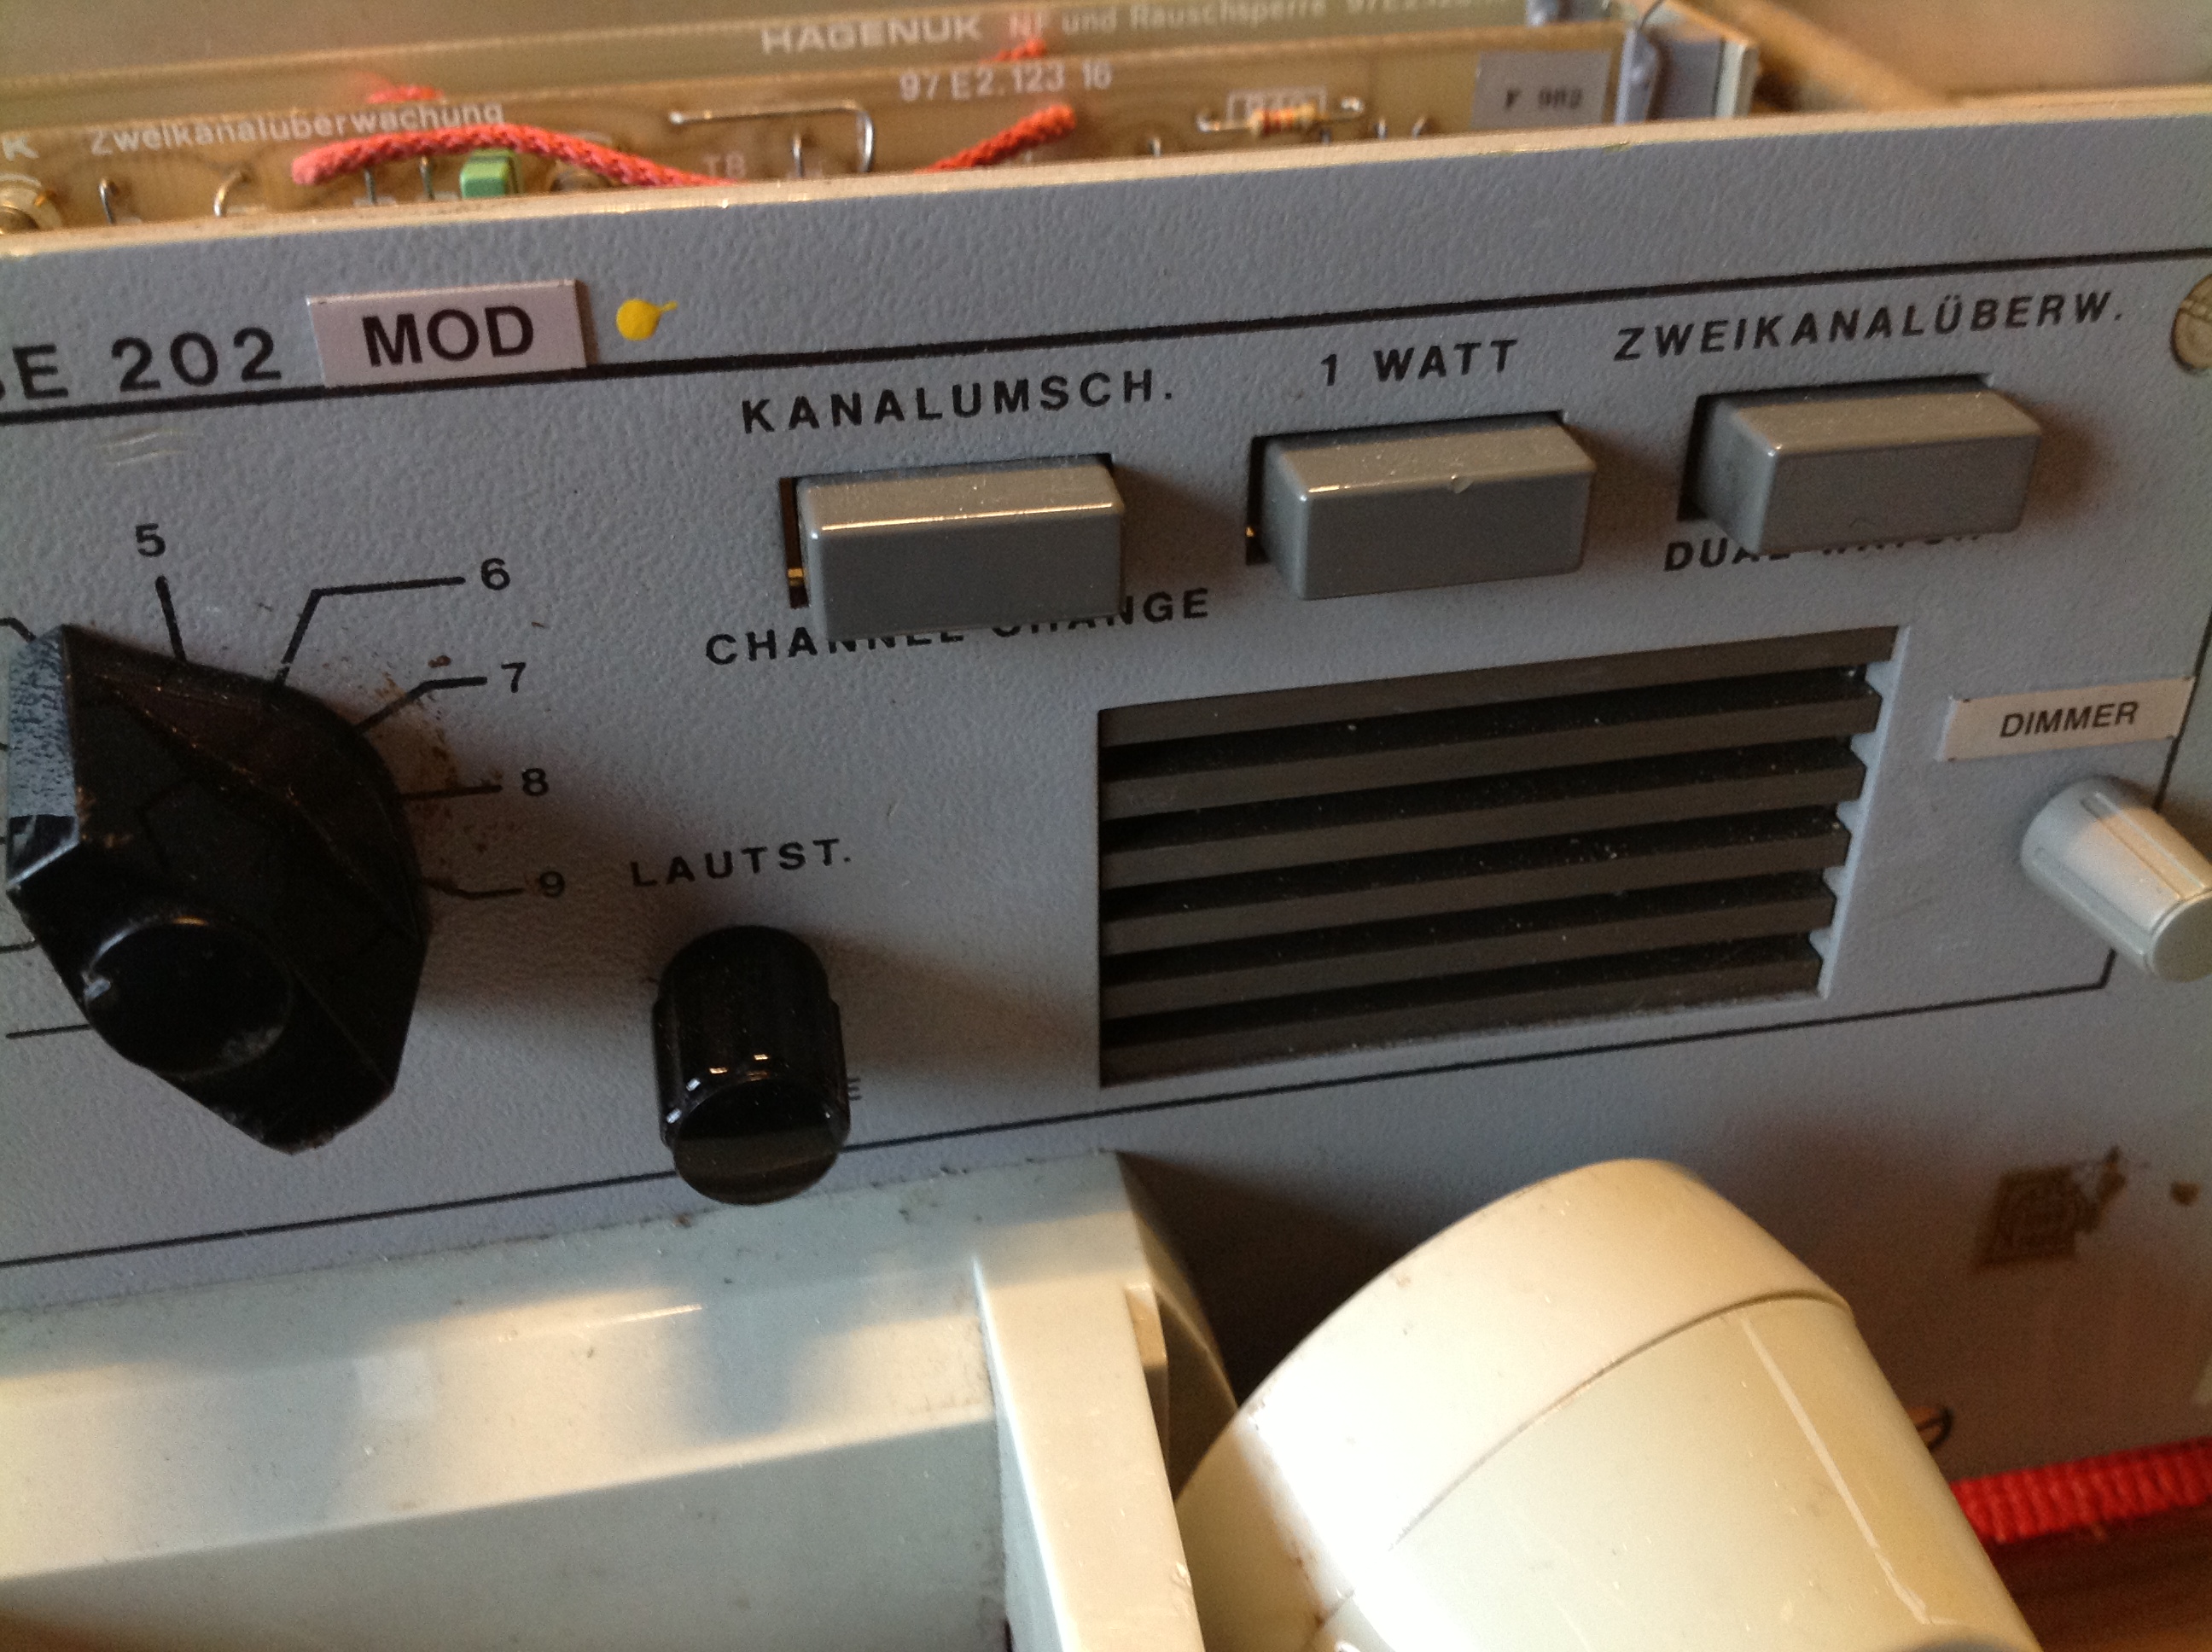 Hagenuk Funksender-Empfänger, UKW-Seefunkanlage, VHF Radiotelephone USE 202 MOD als Einschubmodel